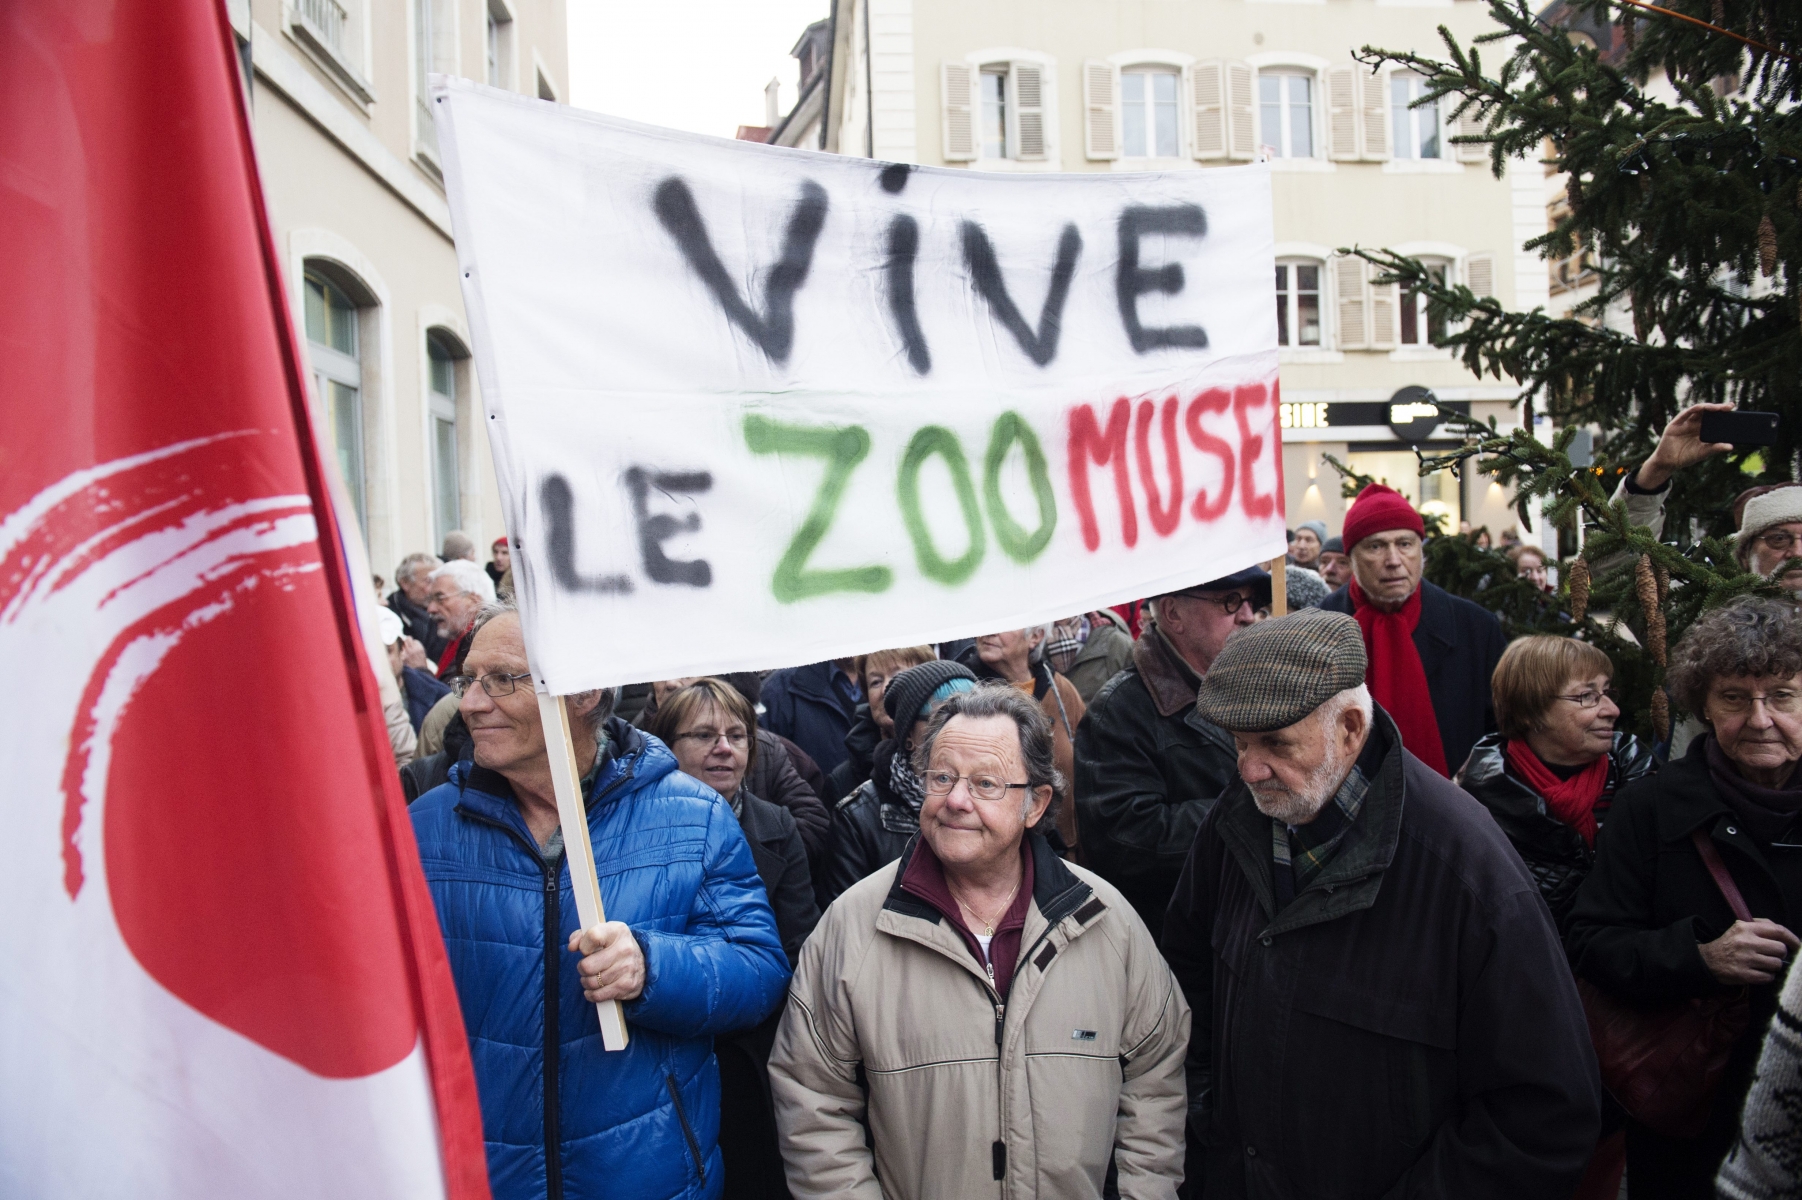 La manif pour le zoo-musée a rassemblé quelque 150 personnes devant l'Hôtel de ville.